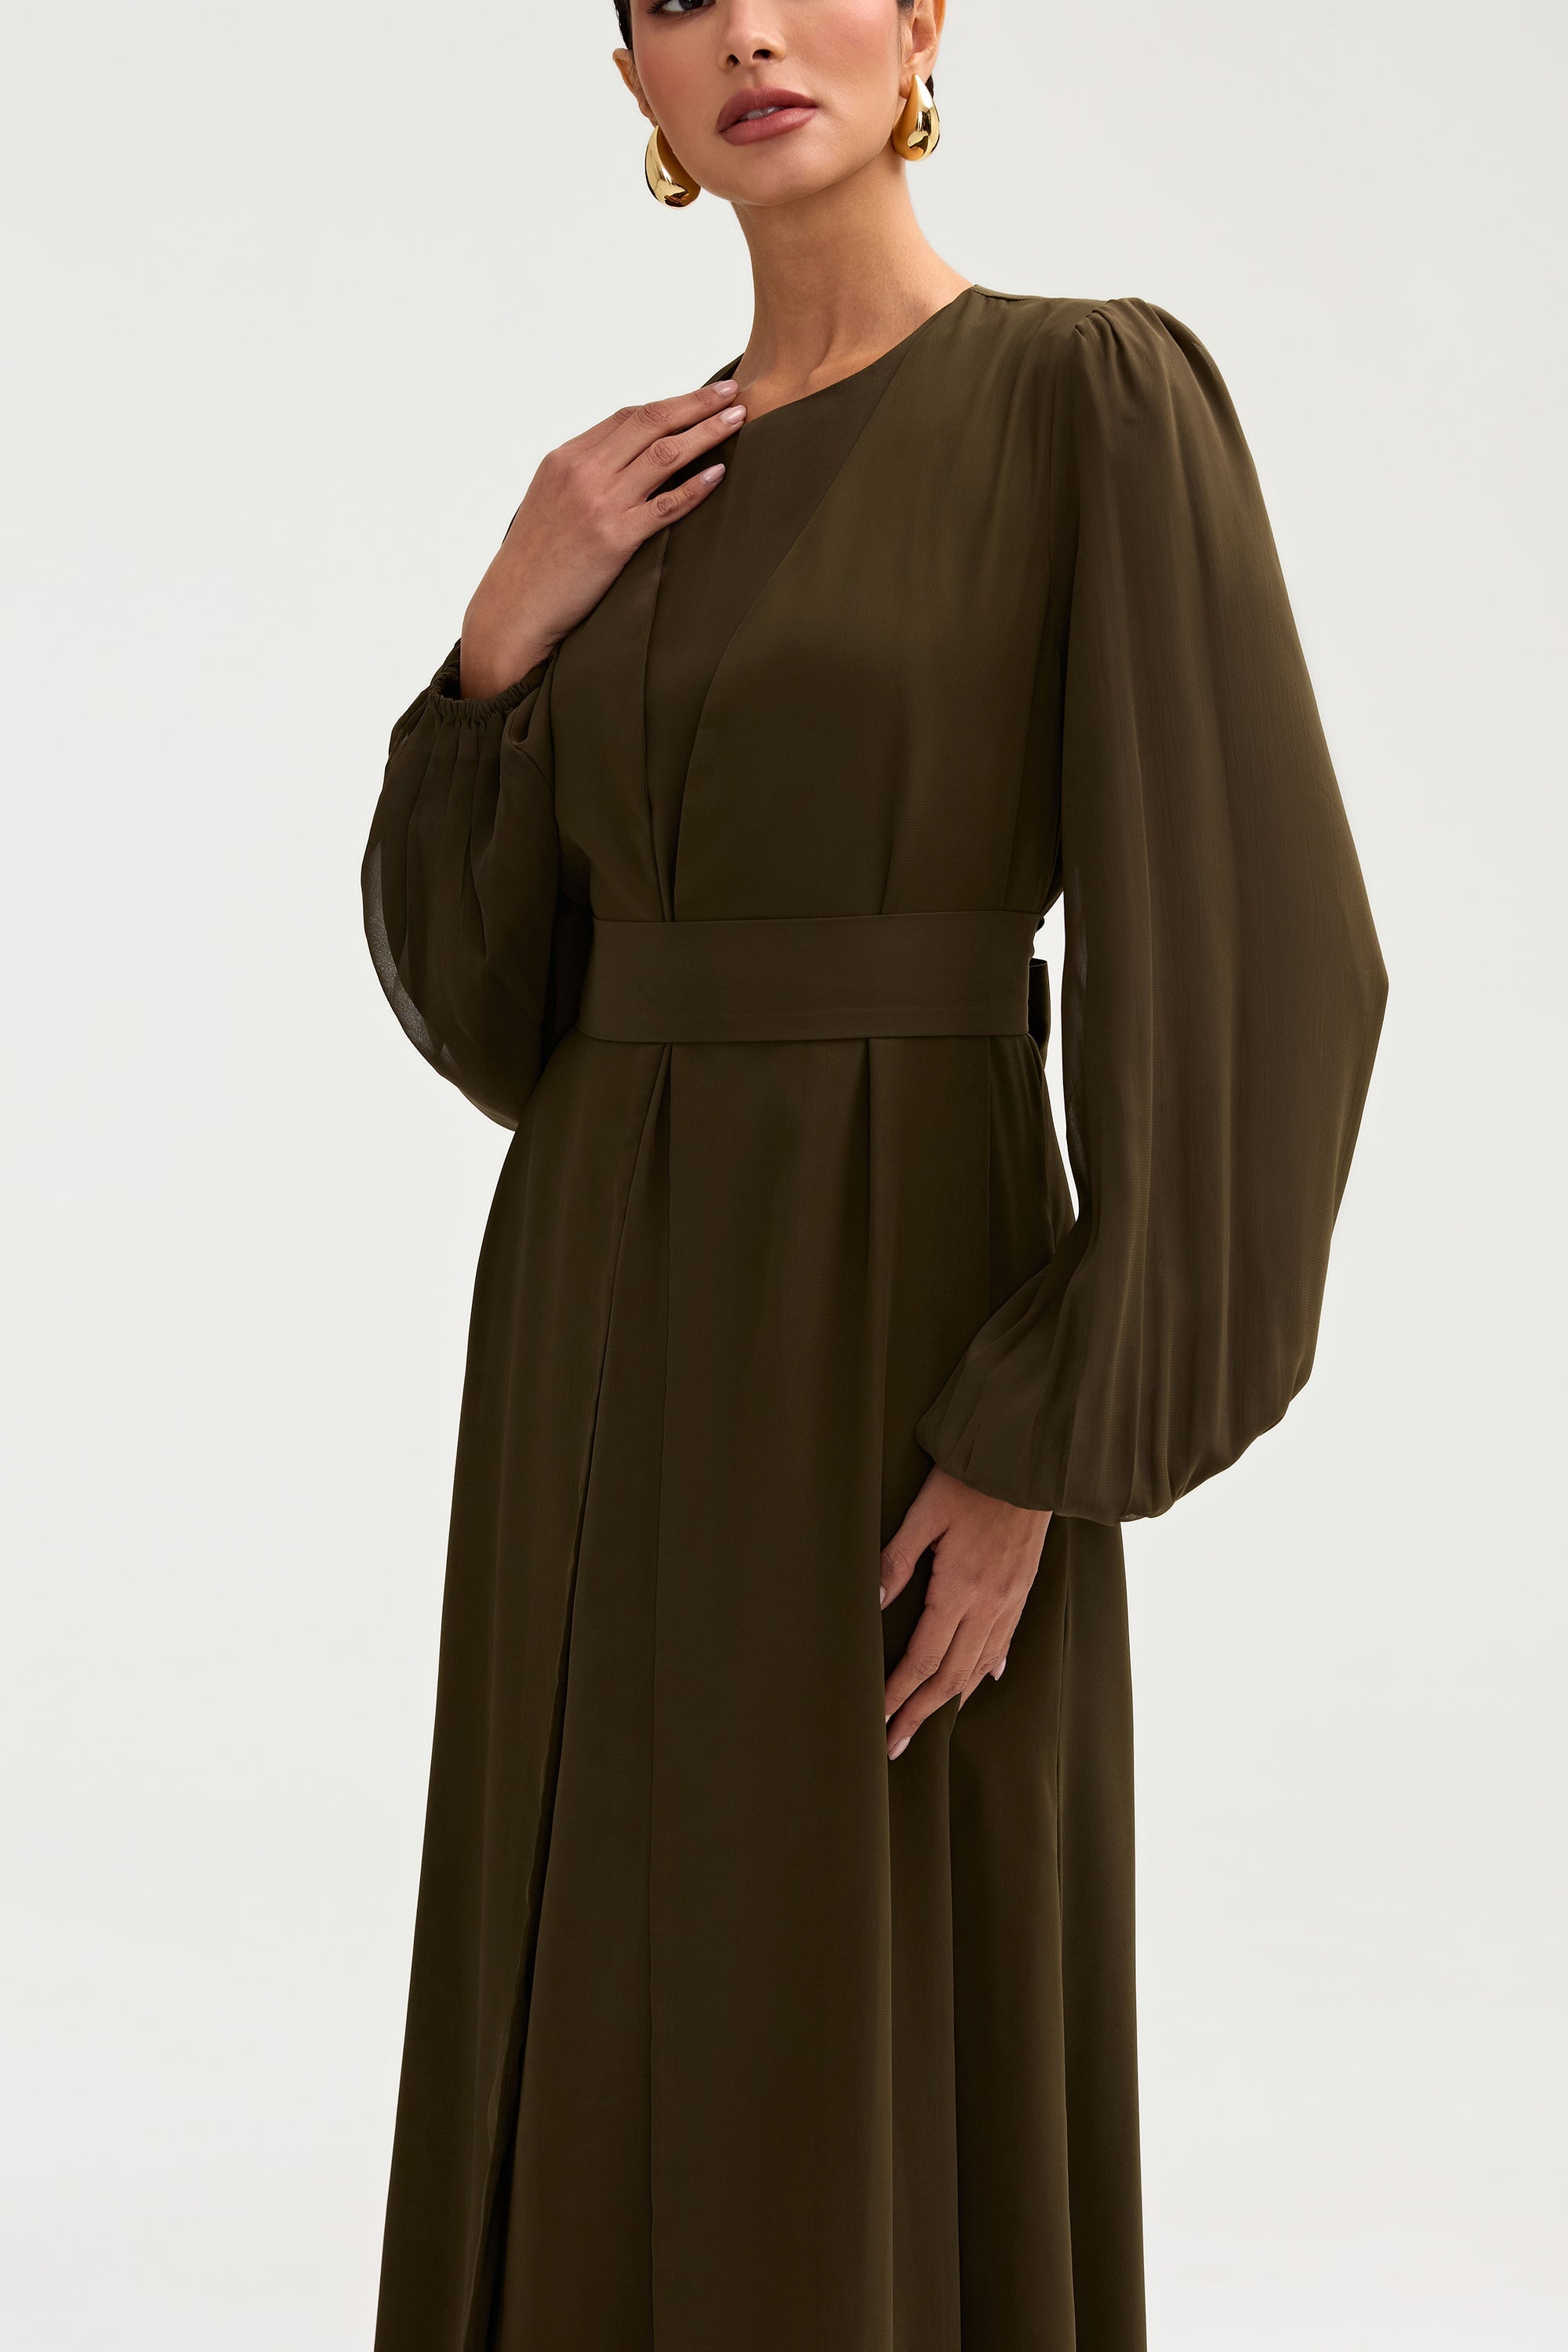 Najma Chiffon Abaya & Dress Set - Olive Clothing Veiled 